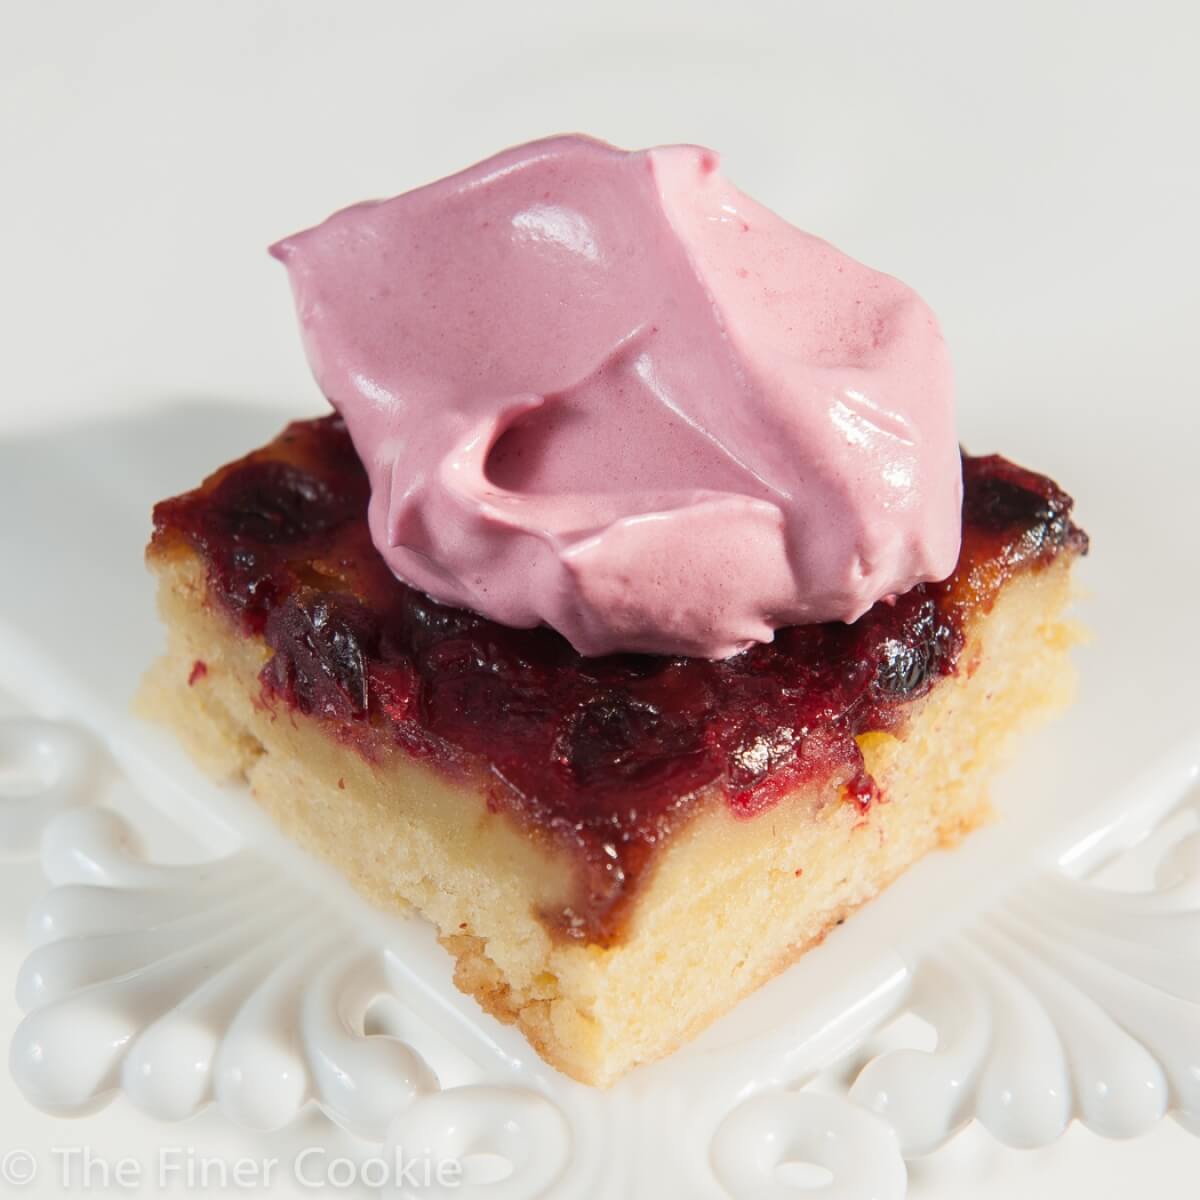 Cran-Raspberry Upside Down Cake